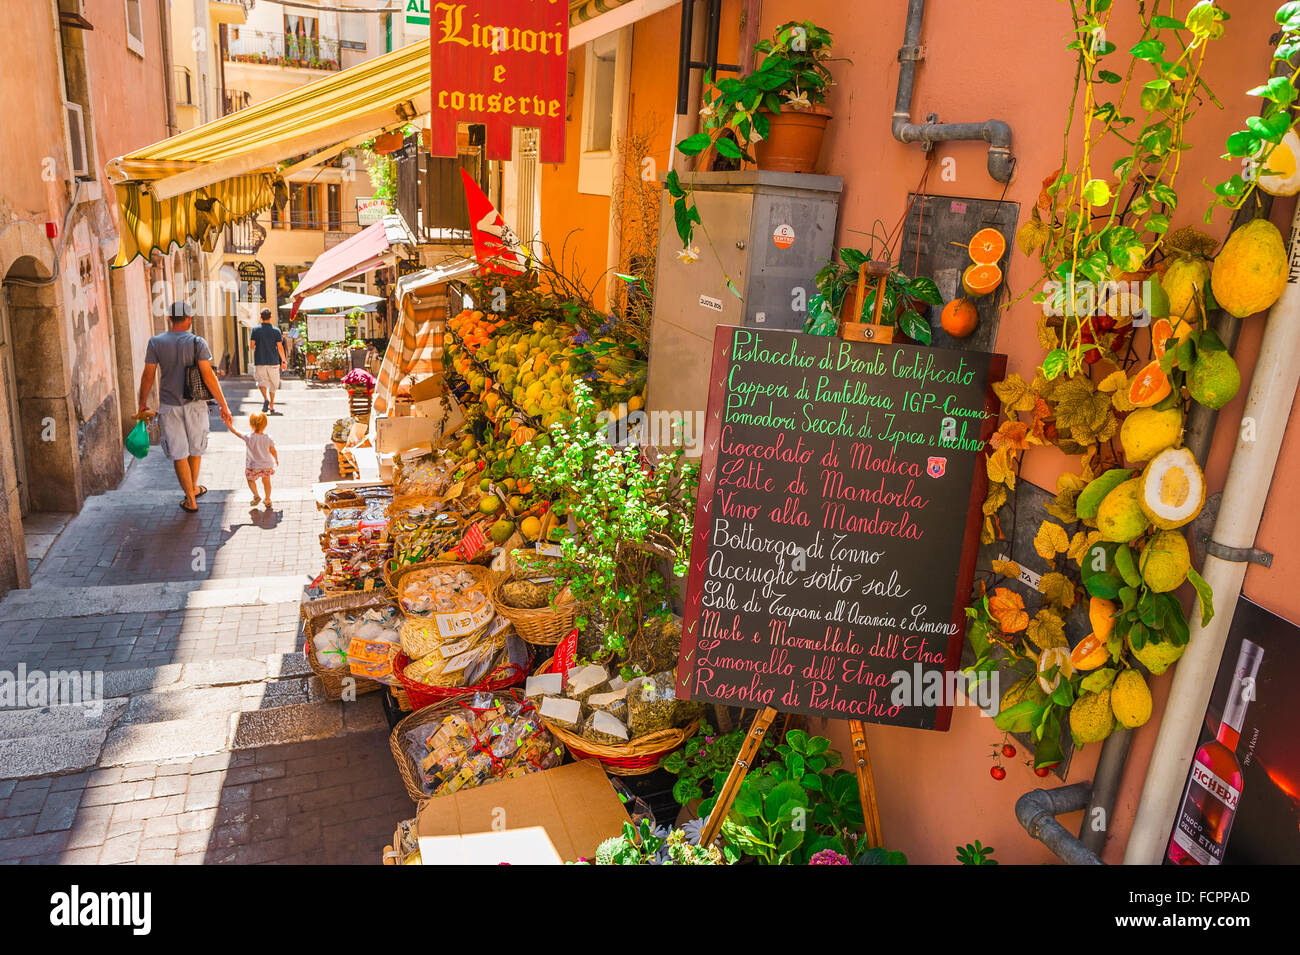 Taormina Sicilia negozio di alimentari, vista di un genitore e un bambino passando un negozio di alimentari colorato in una strada stretta vicino al corso Umberto i a Taormina, Sicilia. Foto Stock